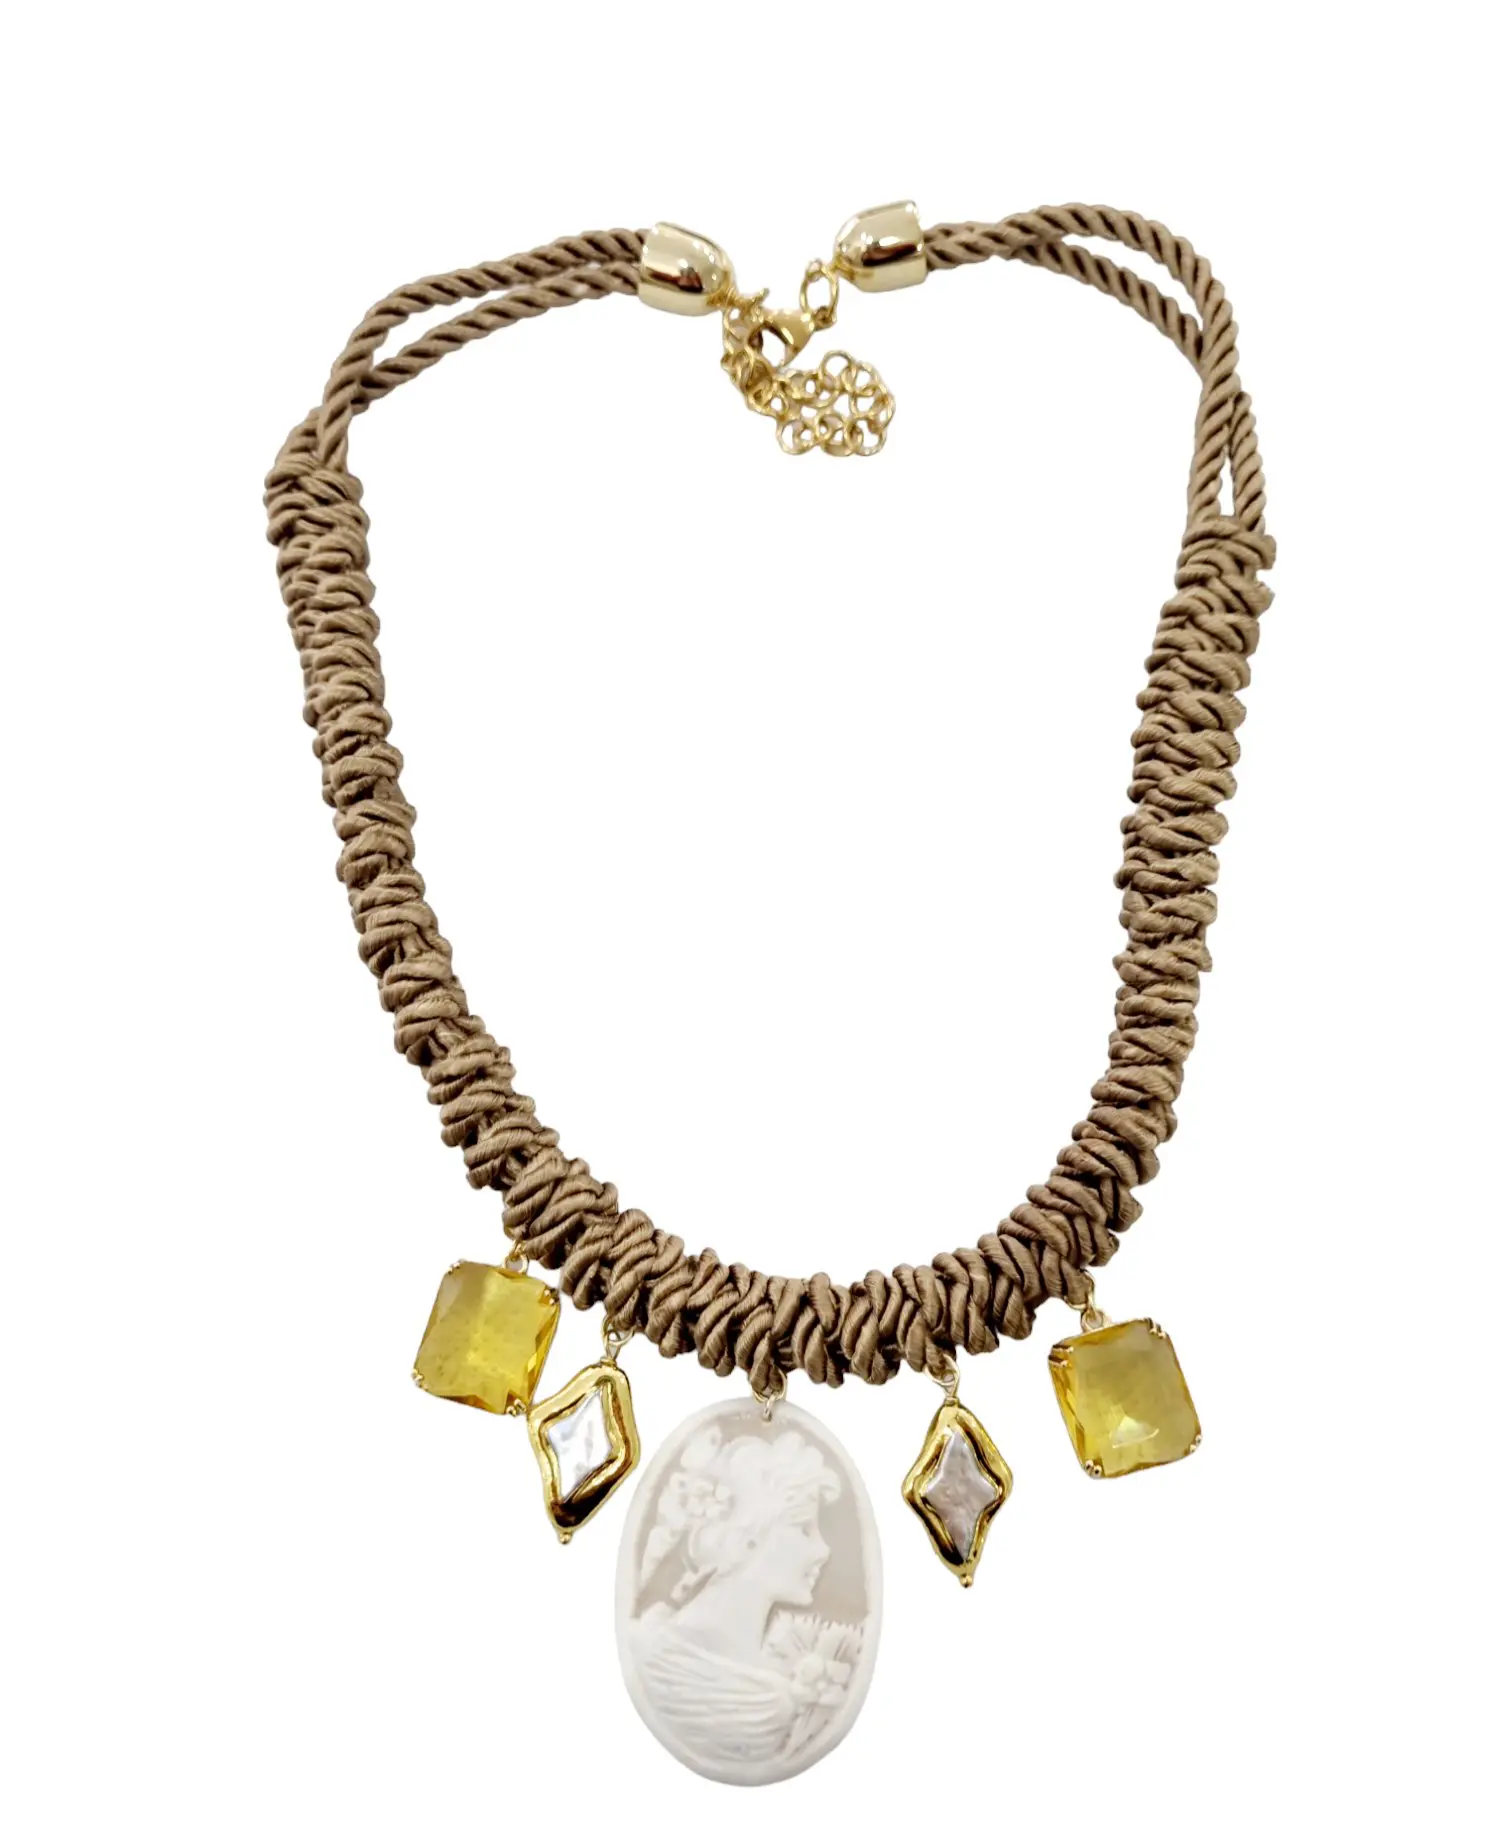 Collier ras de cou réglable avec camée, perles et cristaux – Longueur 54cm